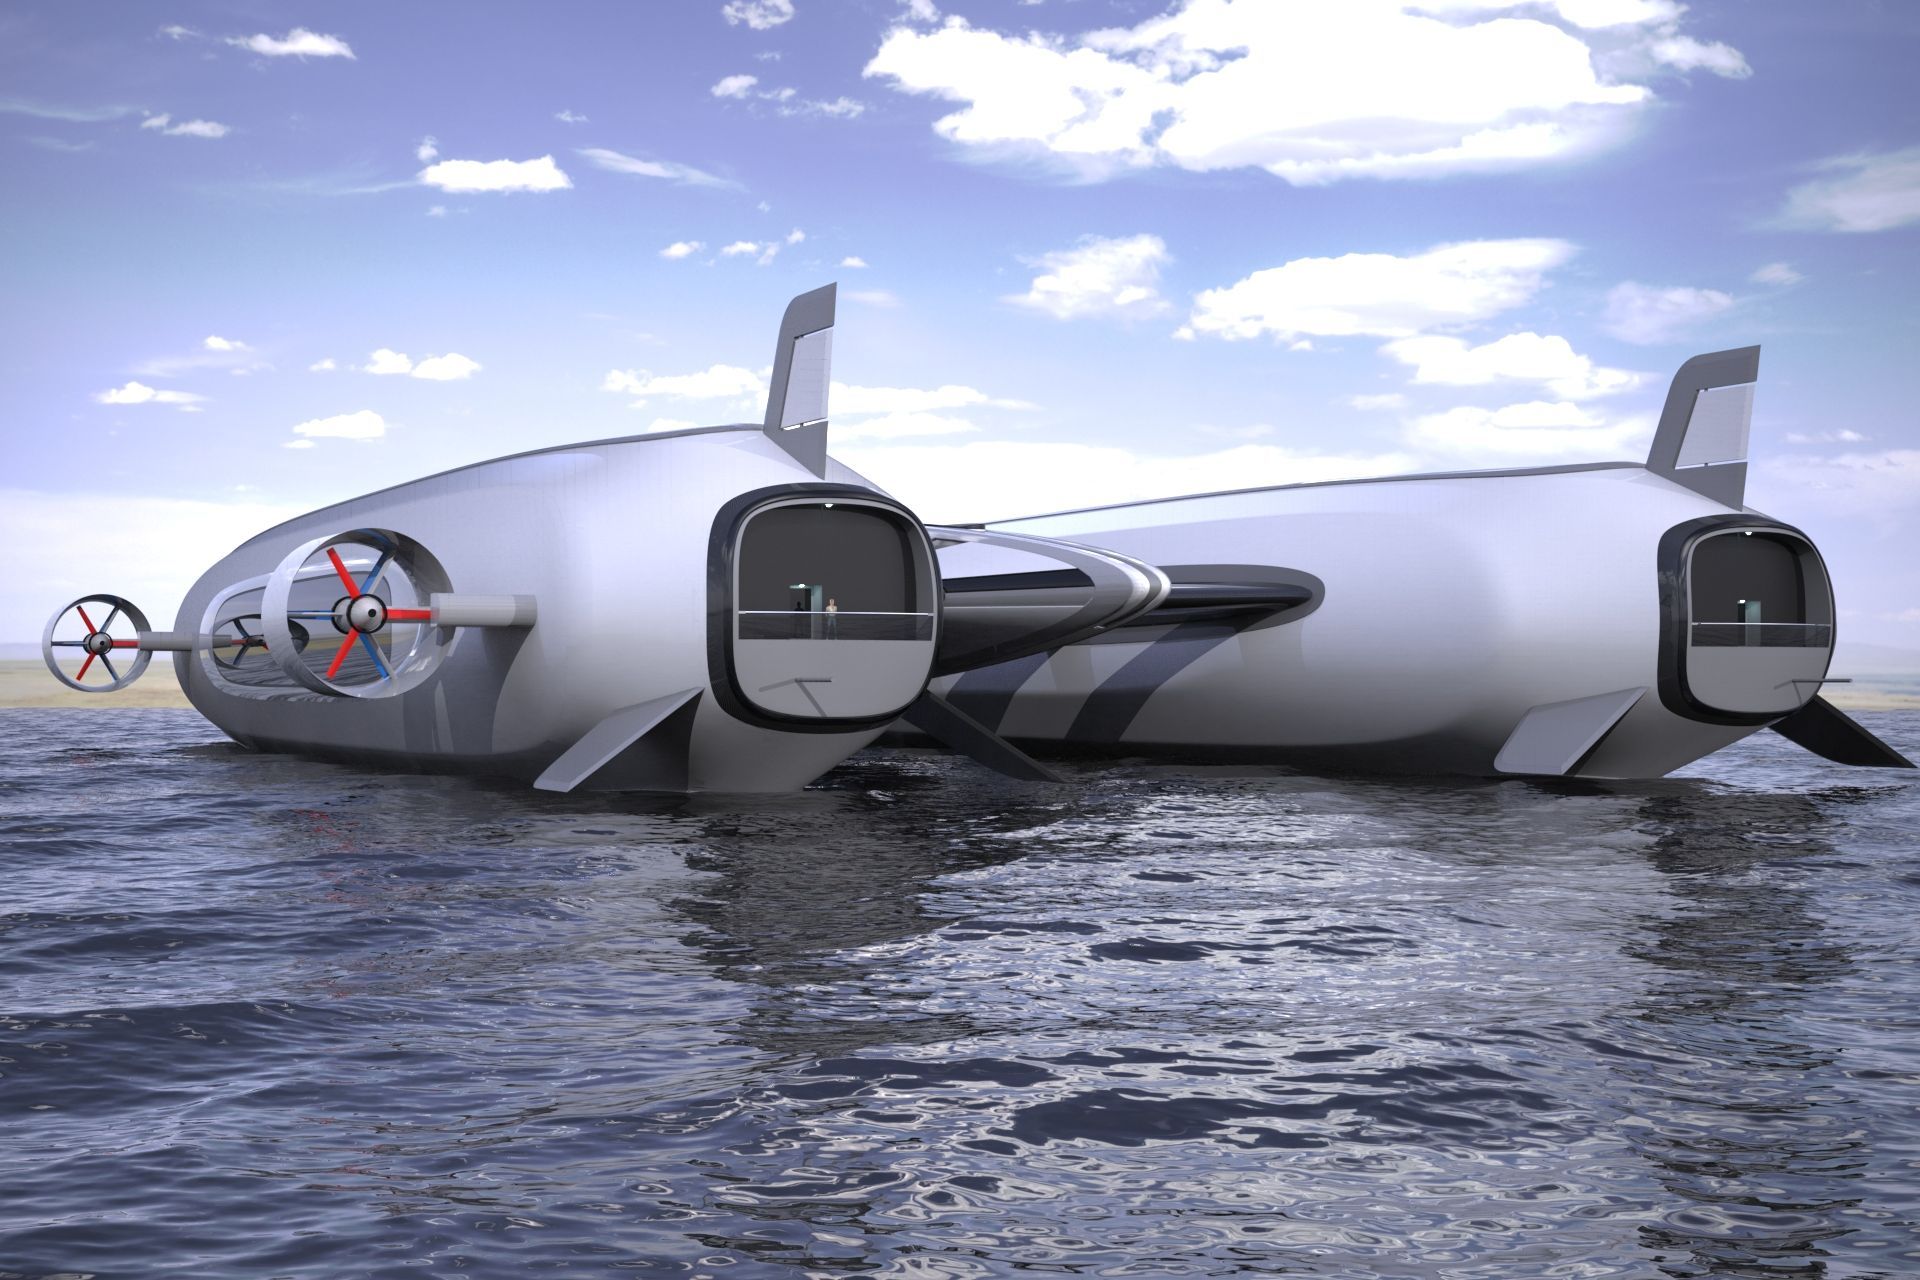 "Sky Yacht"-konceptet utvecklat av Lazzarini Design studio för hållbar luft- och vattenmobilitet